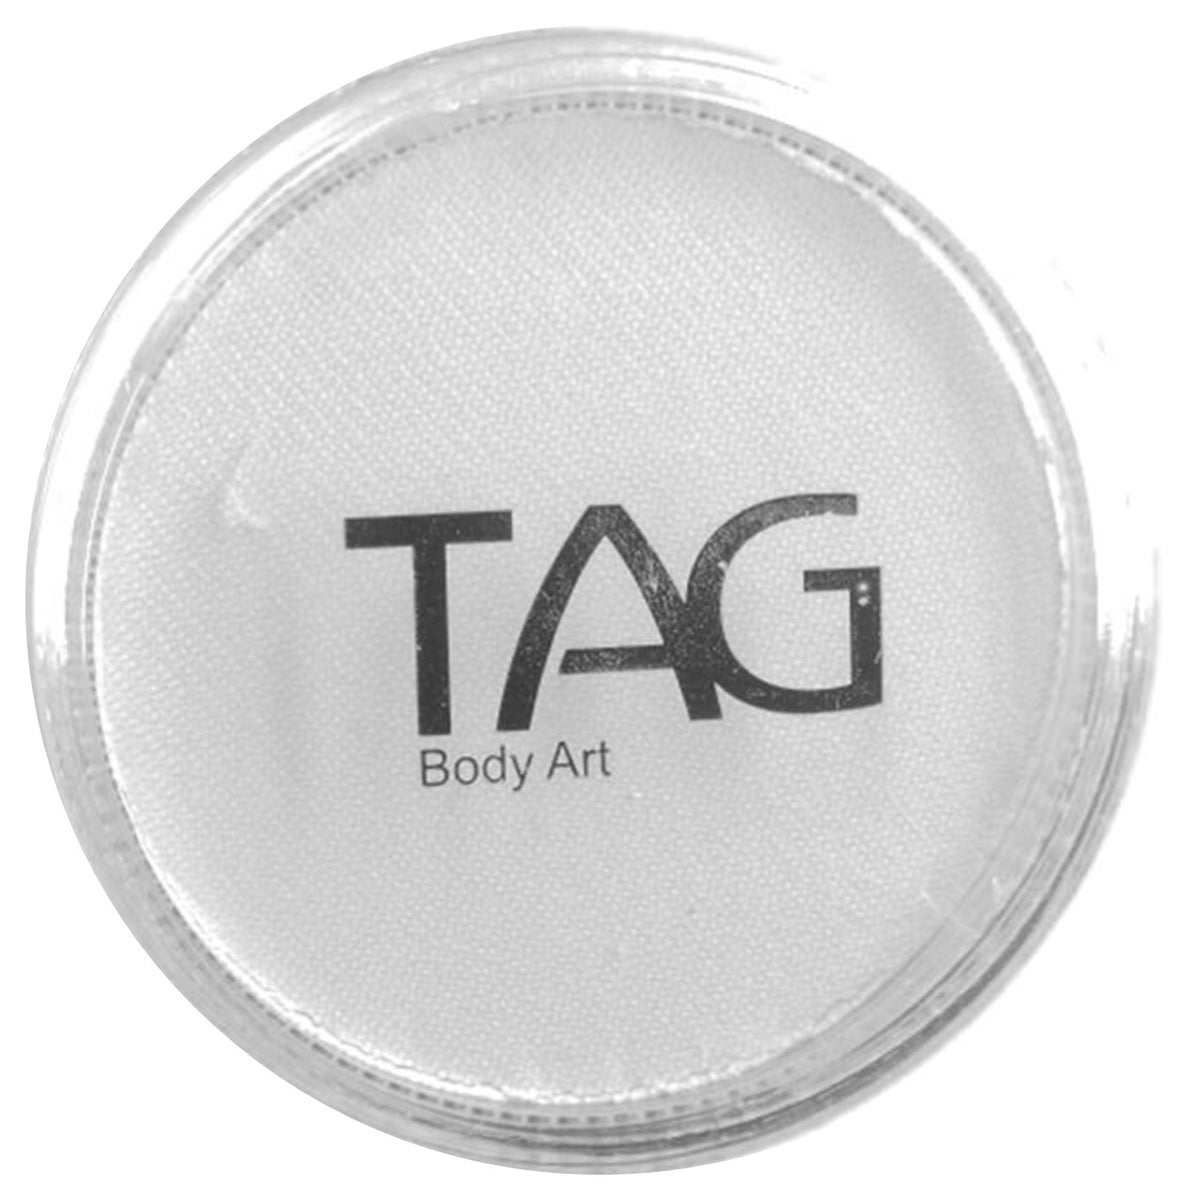 TAG Face Paint - Medium Green 32gr — Jest Paint - Face Paint Store